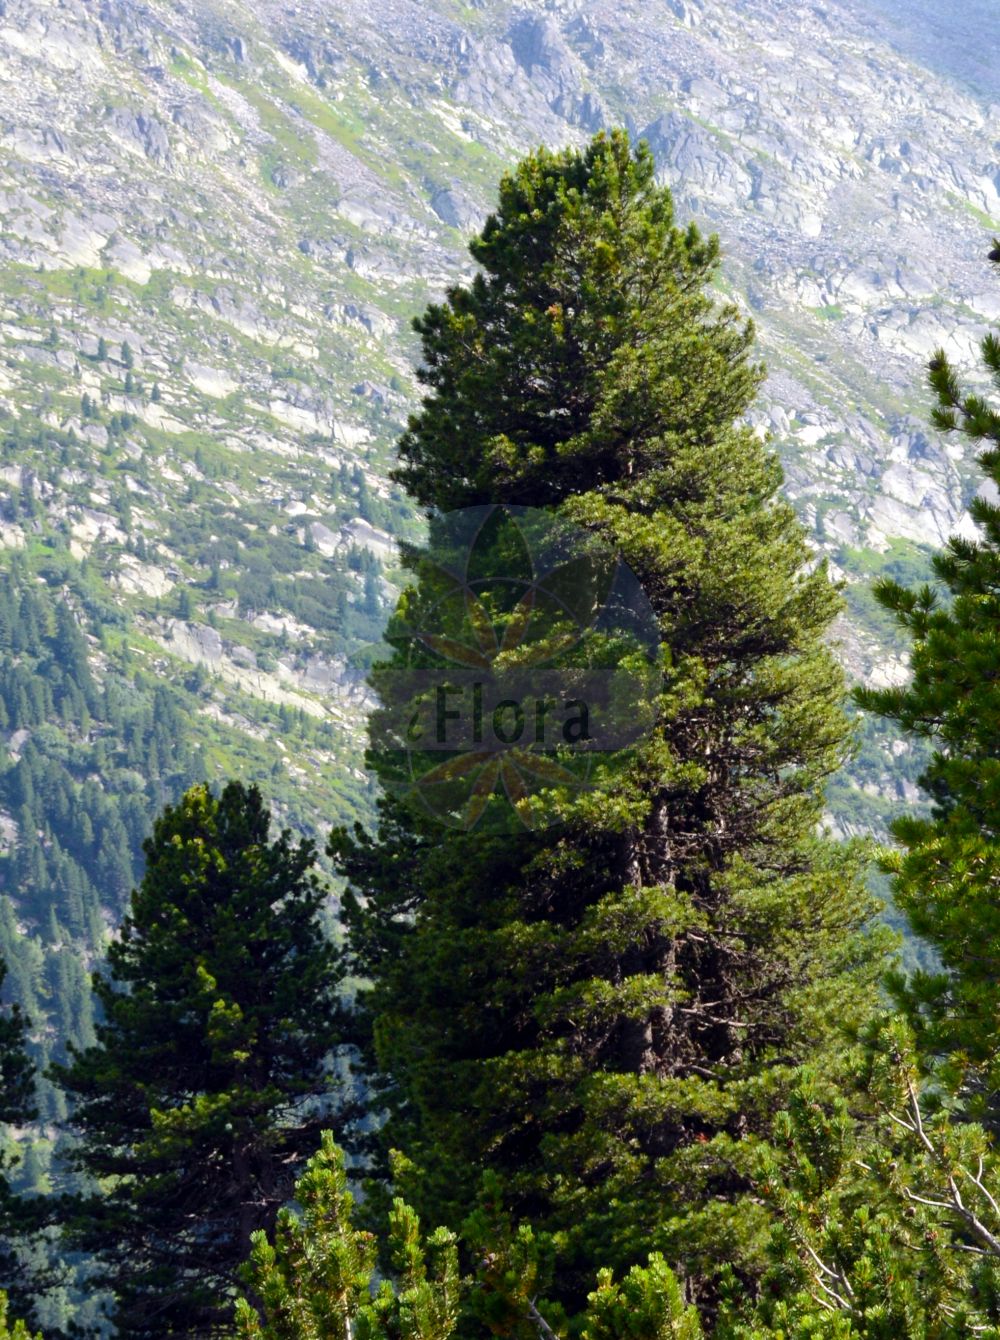 Foto von Pinus cembra (Zirbel-Kiefer - Arolla Pine). Das Foto wurde in Finkenberg, Tirol, Österreich, Alpen, Zillertal aufgenommen. ---- Photo of Pinus cembra (Zirbel-Kiefer - Arolla Pine). The picture was taken in Finkenberg, Tyrol, Austria, Alps, Zillertal.(Pinus cembra,Zirbel-Kiefer,Arolla Pine,Pinus cembra,Zirbel-Kiefer,Arve,Arolla Pine,Swiss Stone Pine,Alpine Stone Pine,Pinus,Kiefer,Pine,Pinaceae,Kieferngewächse,Pine family)